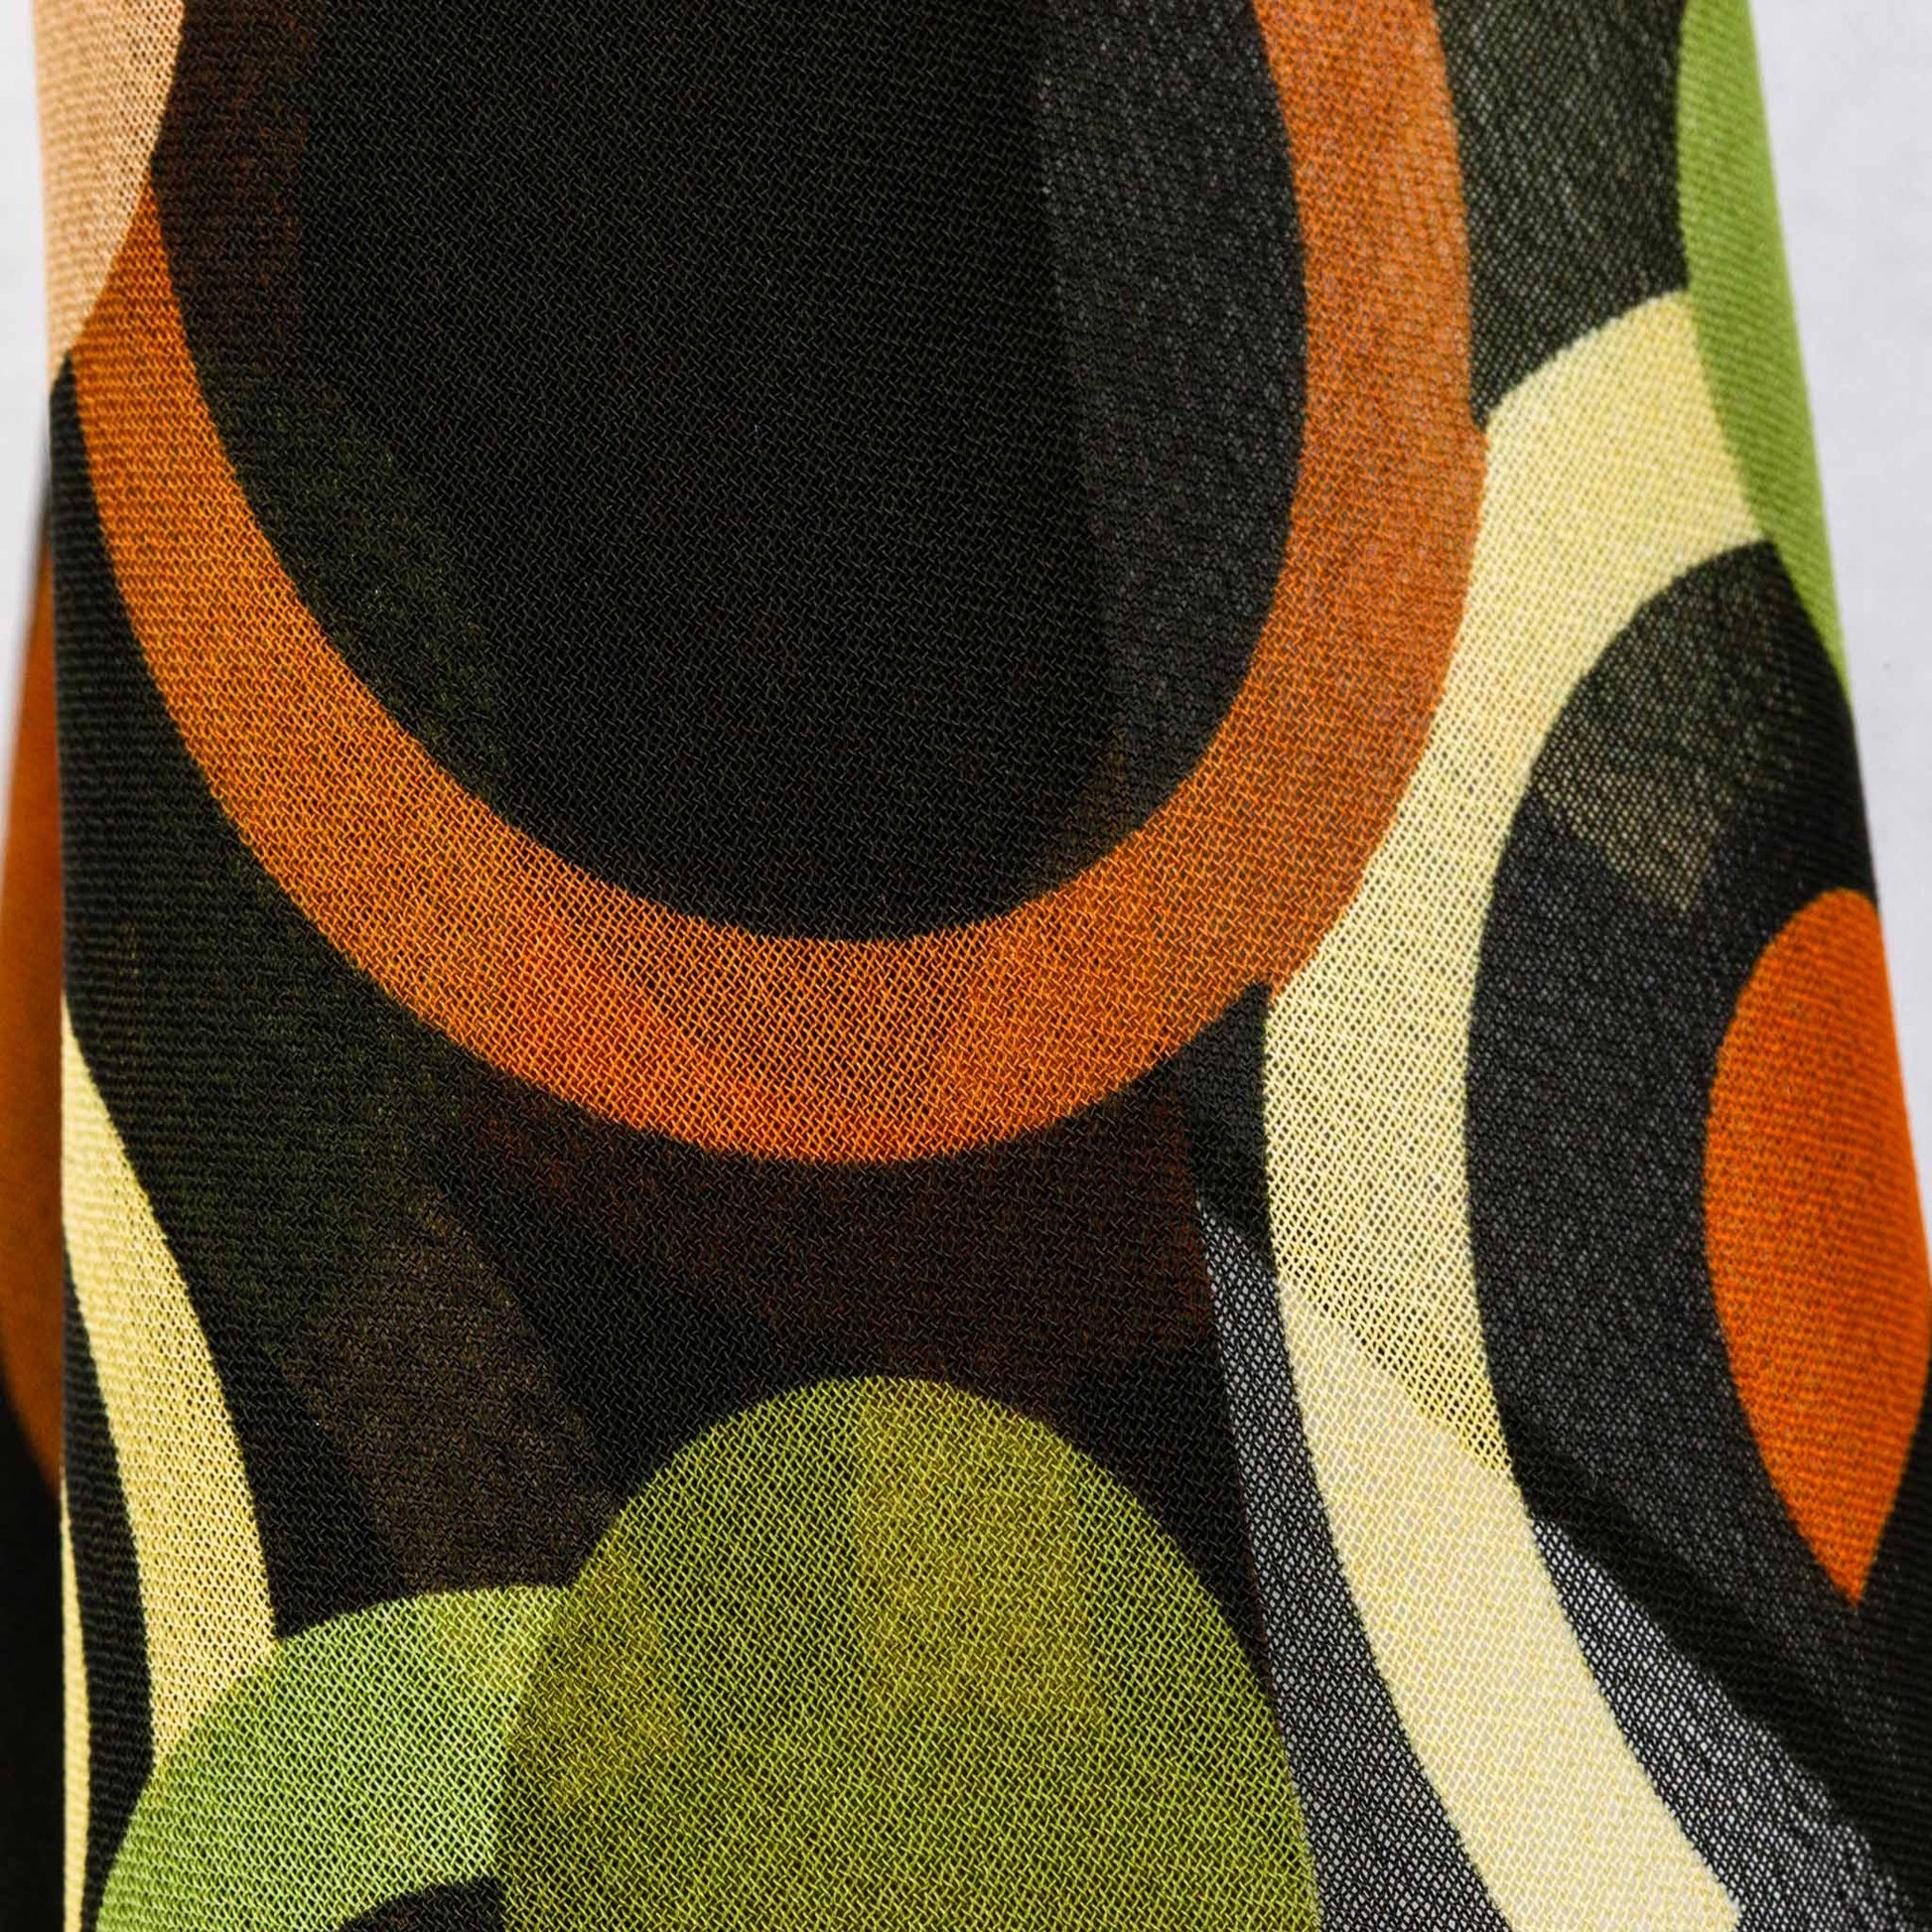 Eșarfă damă din mătase , imprimeu cu cercuri, 65 x 65 cm - Verde, Maro